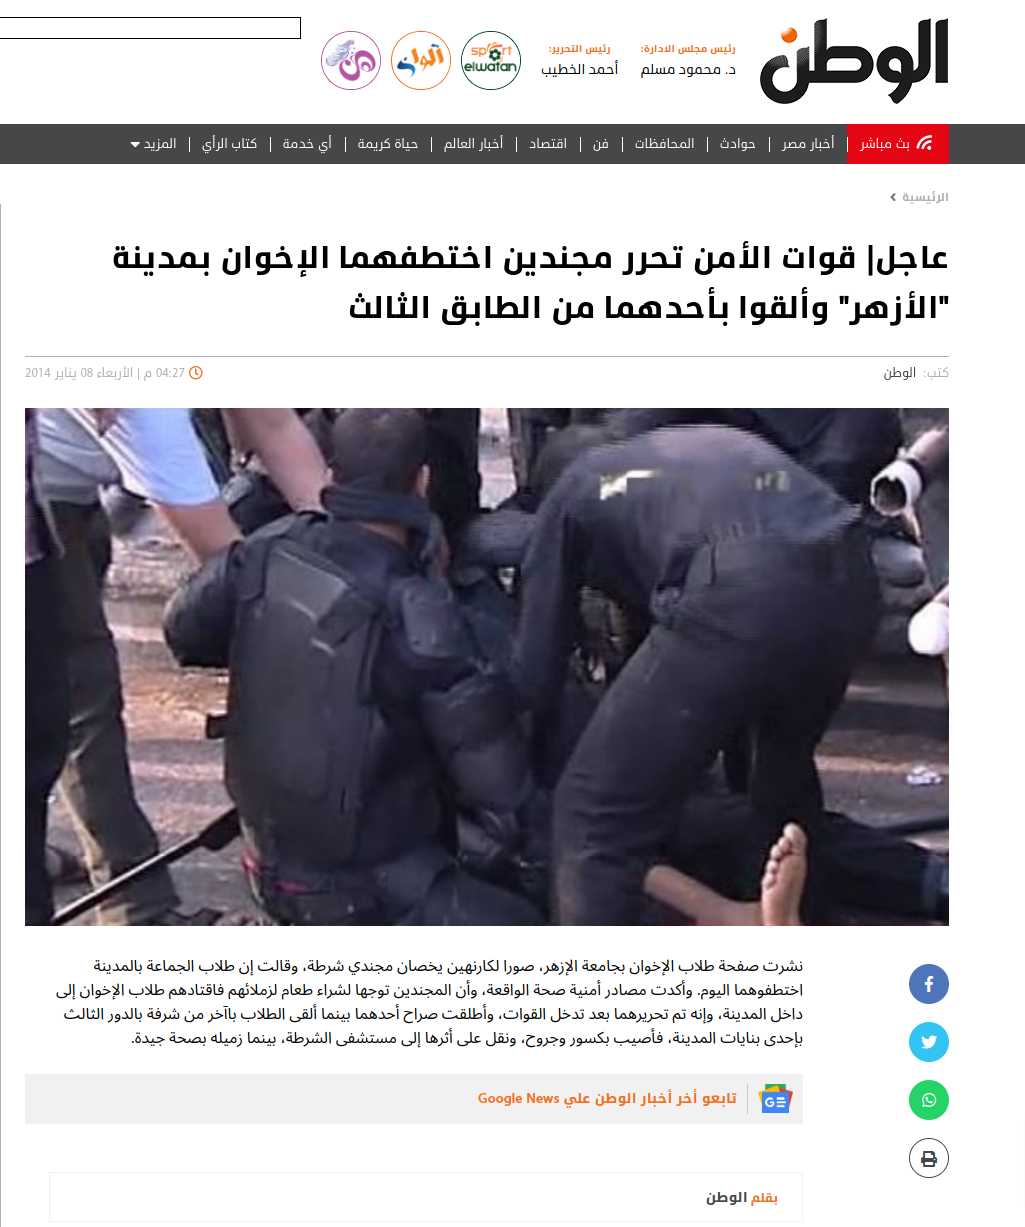 عاجل قوات الأمن تحرر مجندين اختطفهما الإخوان بمدينة الأزهر وألقوا بأحدهما من الطابق الثالث الوطن